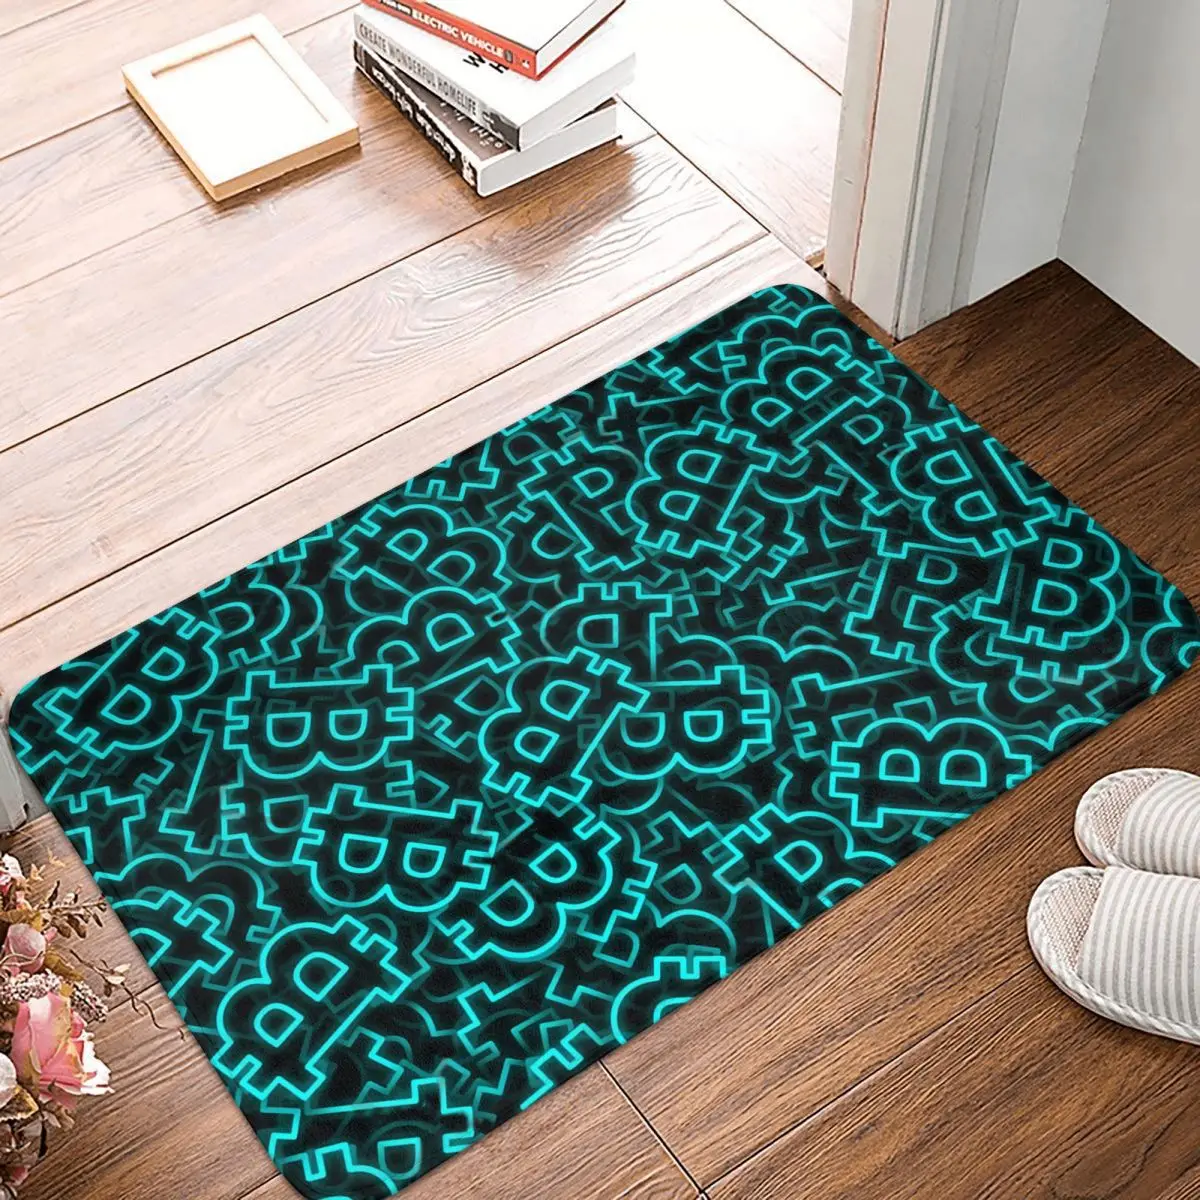 

Bitcoin Kitchen Non-Slip Carpet Camouflage Art Culture Living Room Mat Entrance Door Doormat Floor Decor Rug